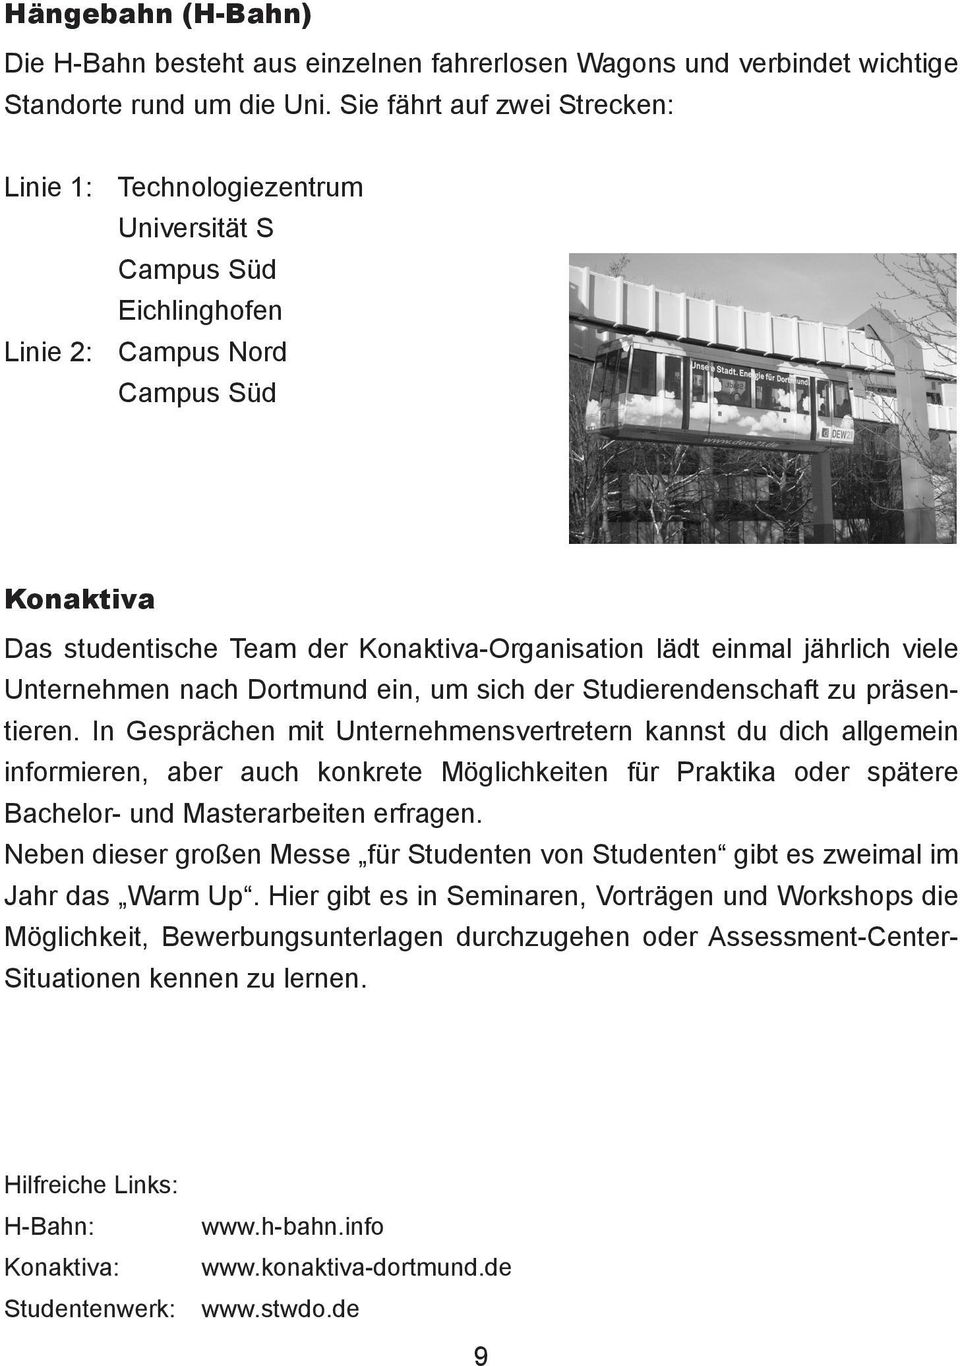 jährlich viele Unternehmen nach Dortmund ein, um sich der Studierendenschaft zu präsentieren.